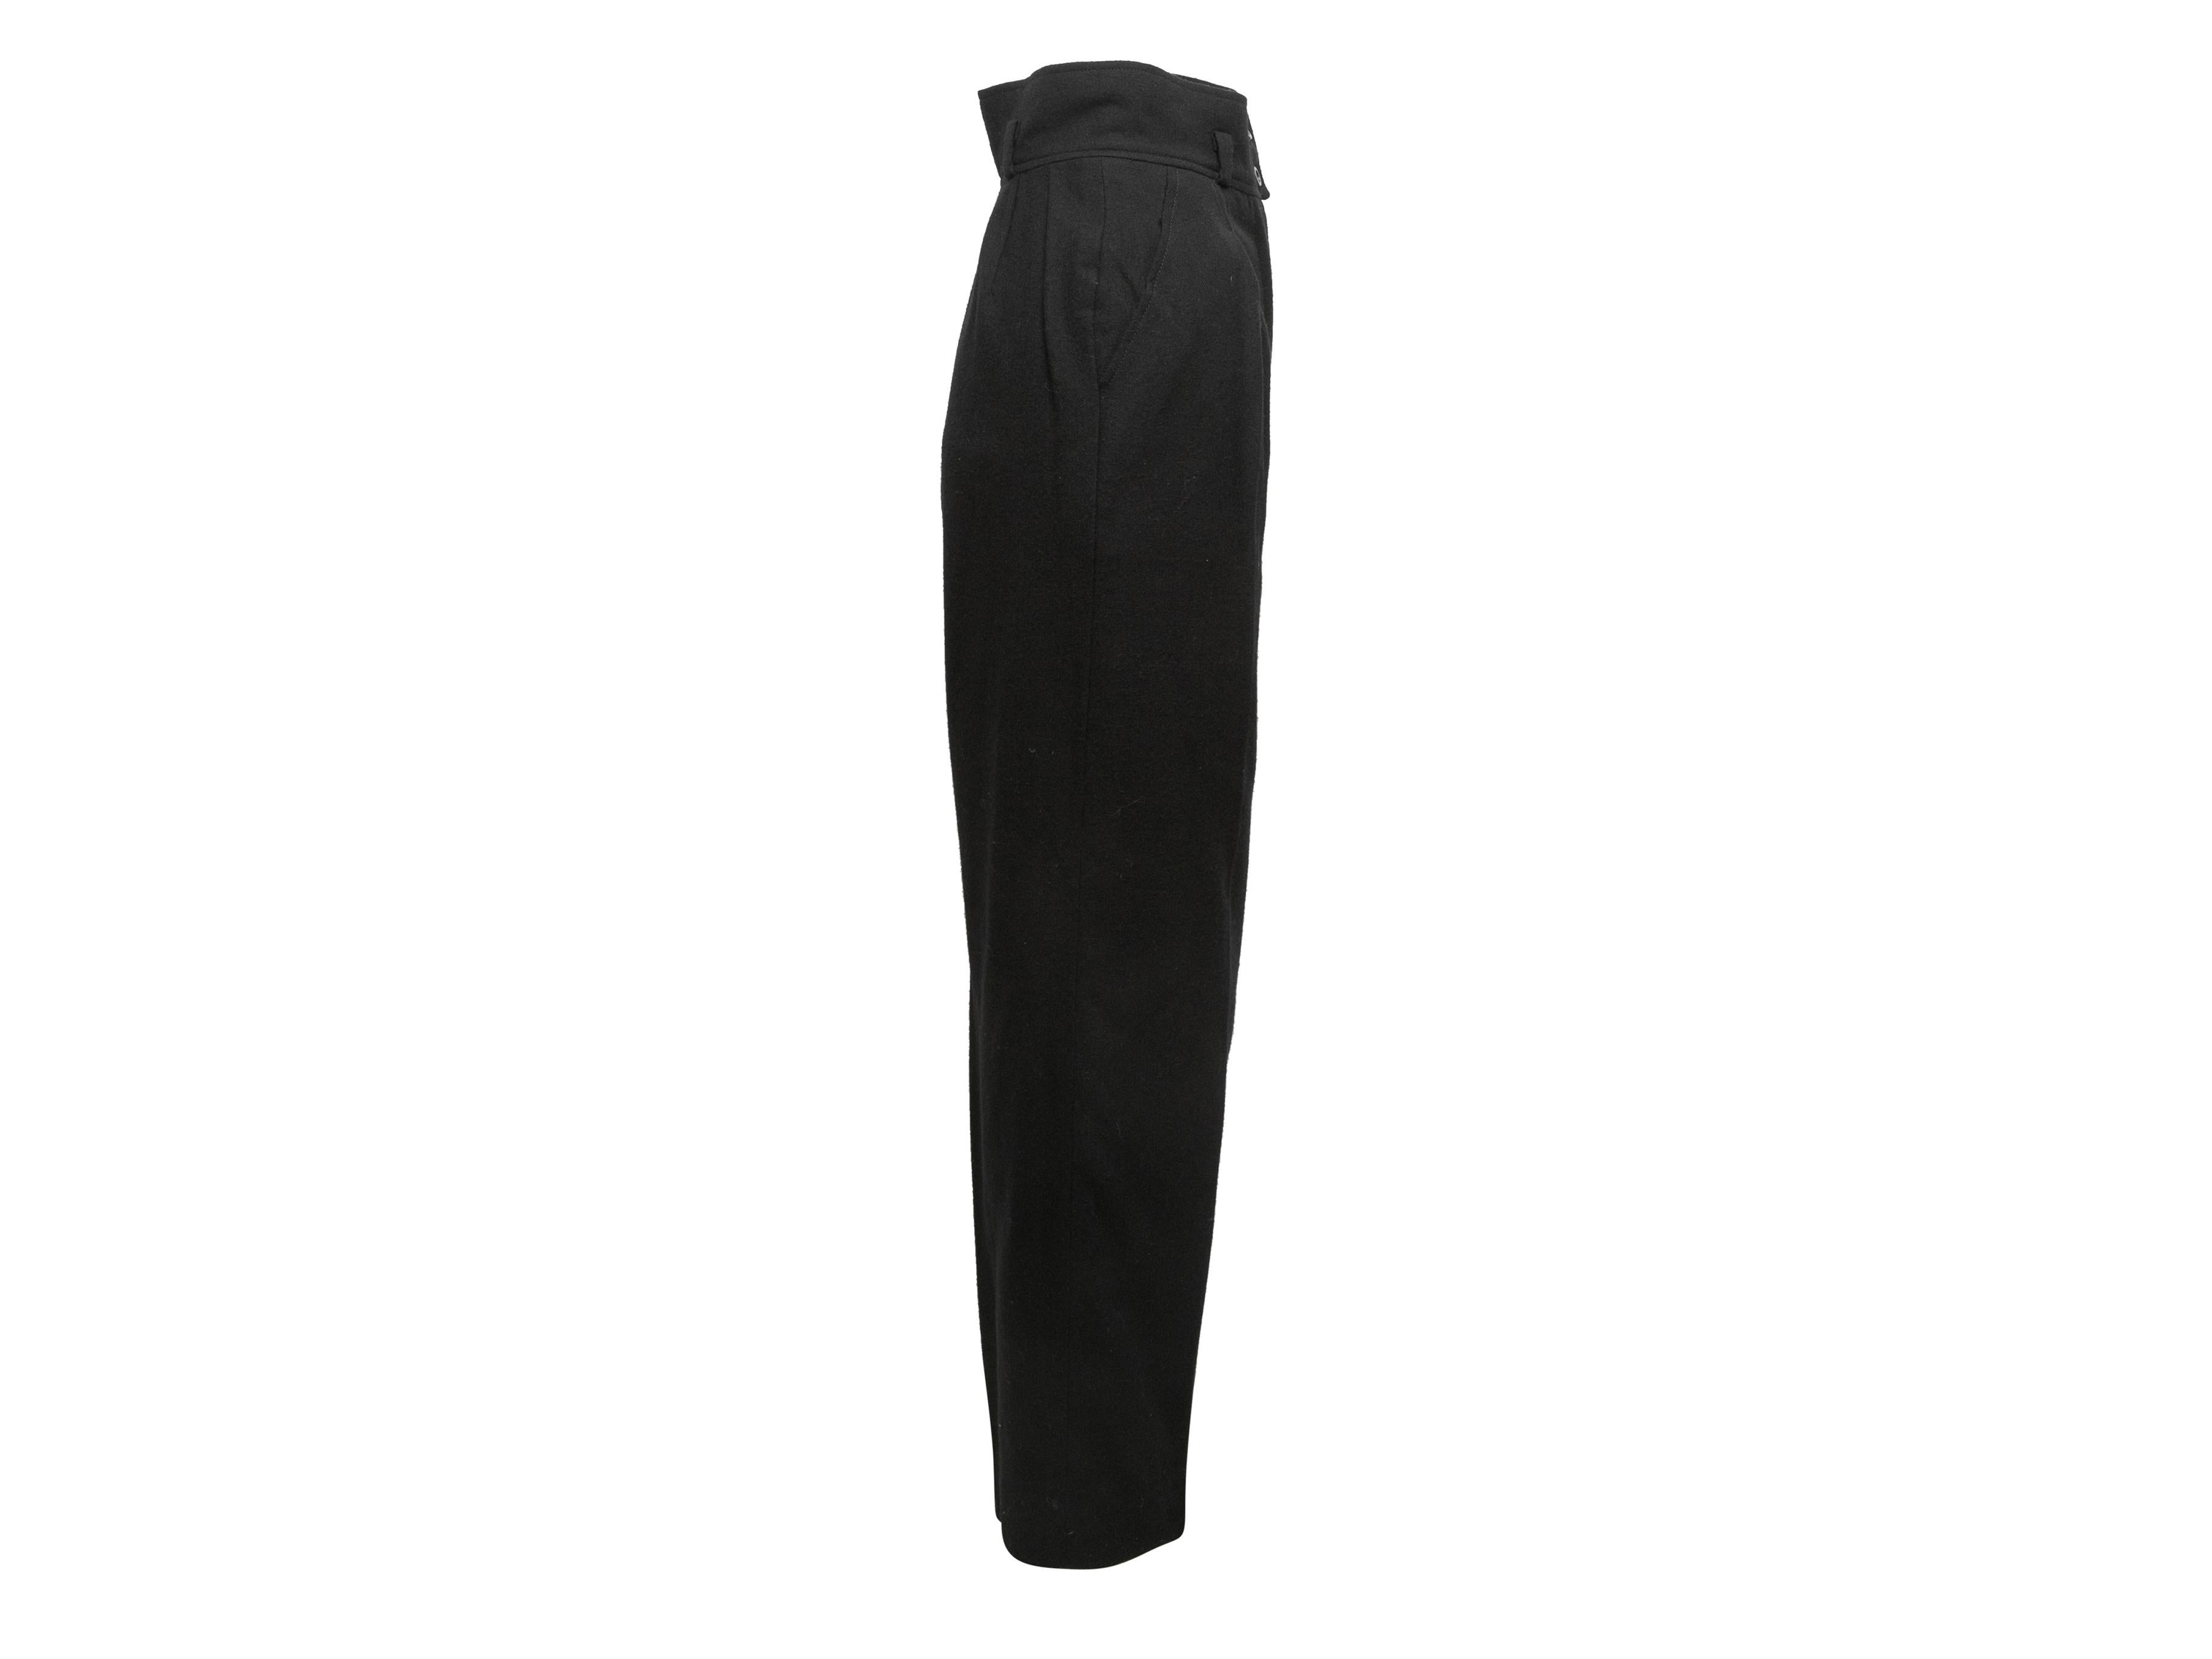 Pantalon droit en laine noire vintage de Chanel Boutique. Deux poches sur les hanches. Fermeture à glissière sur le devant. Taille de 23